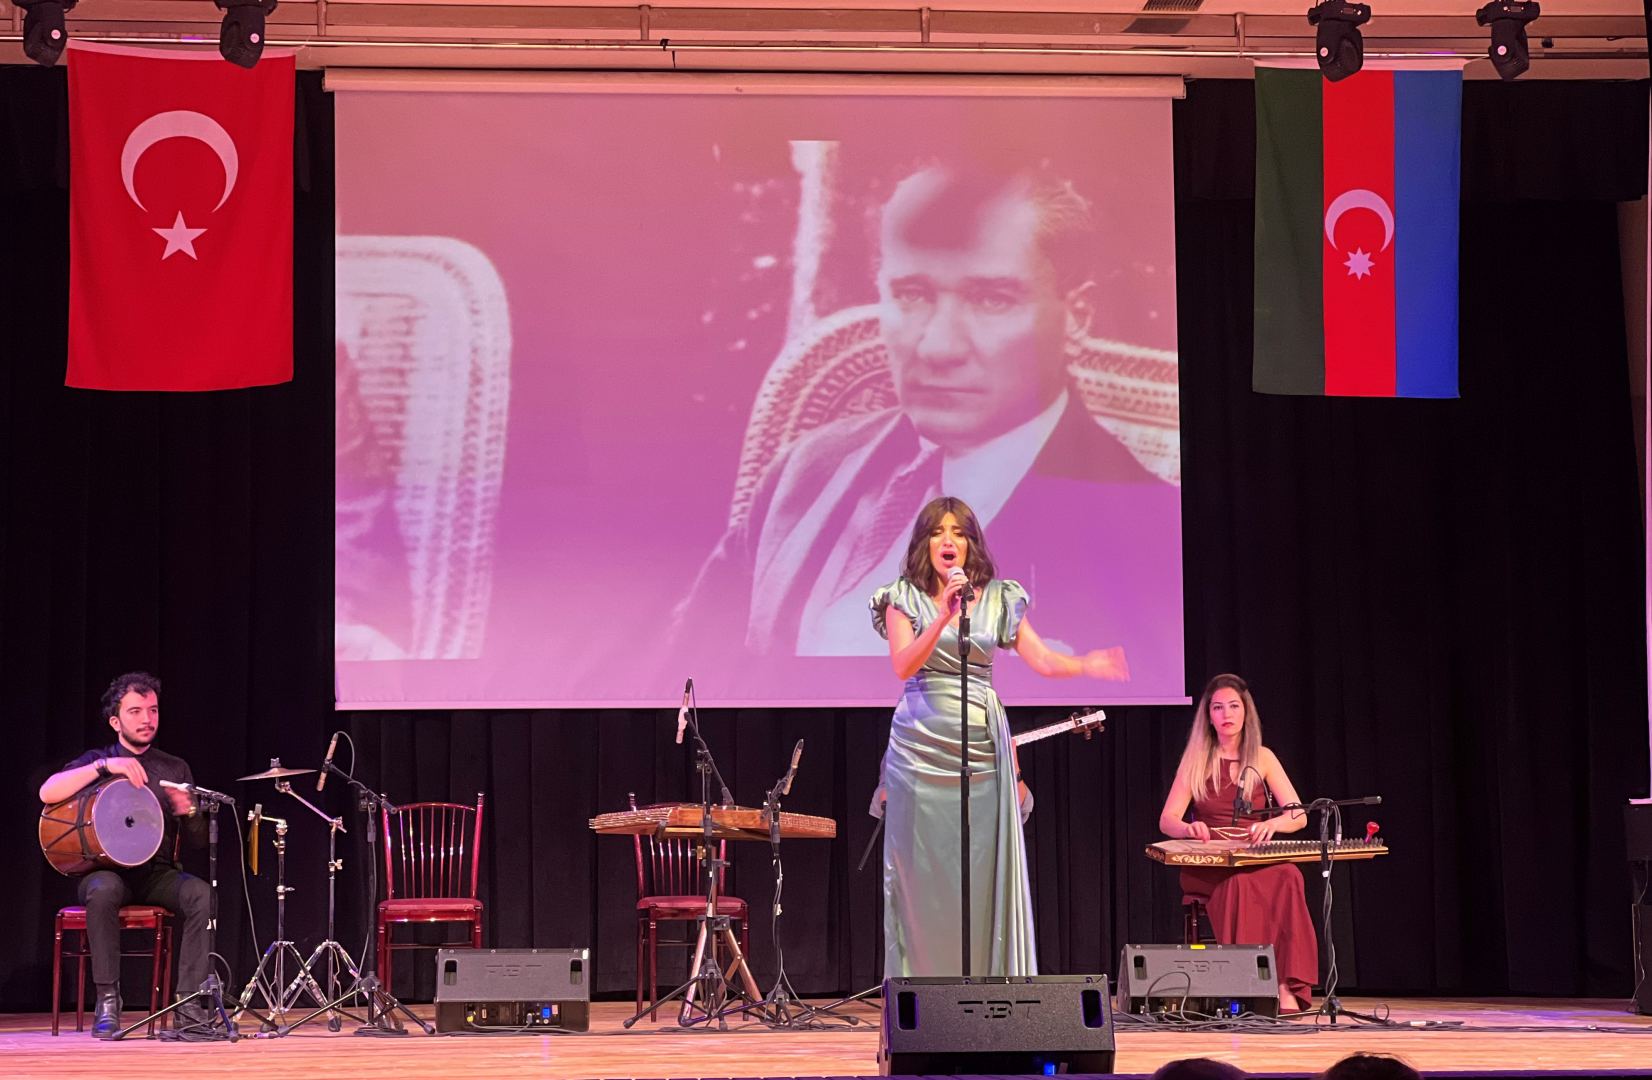 Азербайджанские народные песни и мугам прозвучали в Турции в исполнении участников проекта Gənclərə dəstək (ФОТО/ВИДЕО)